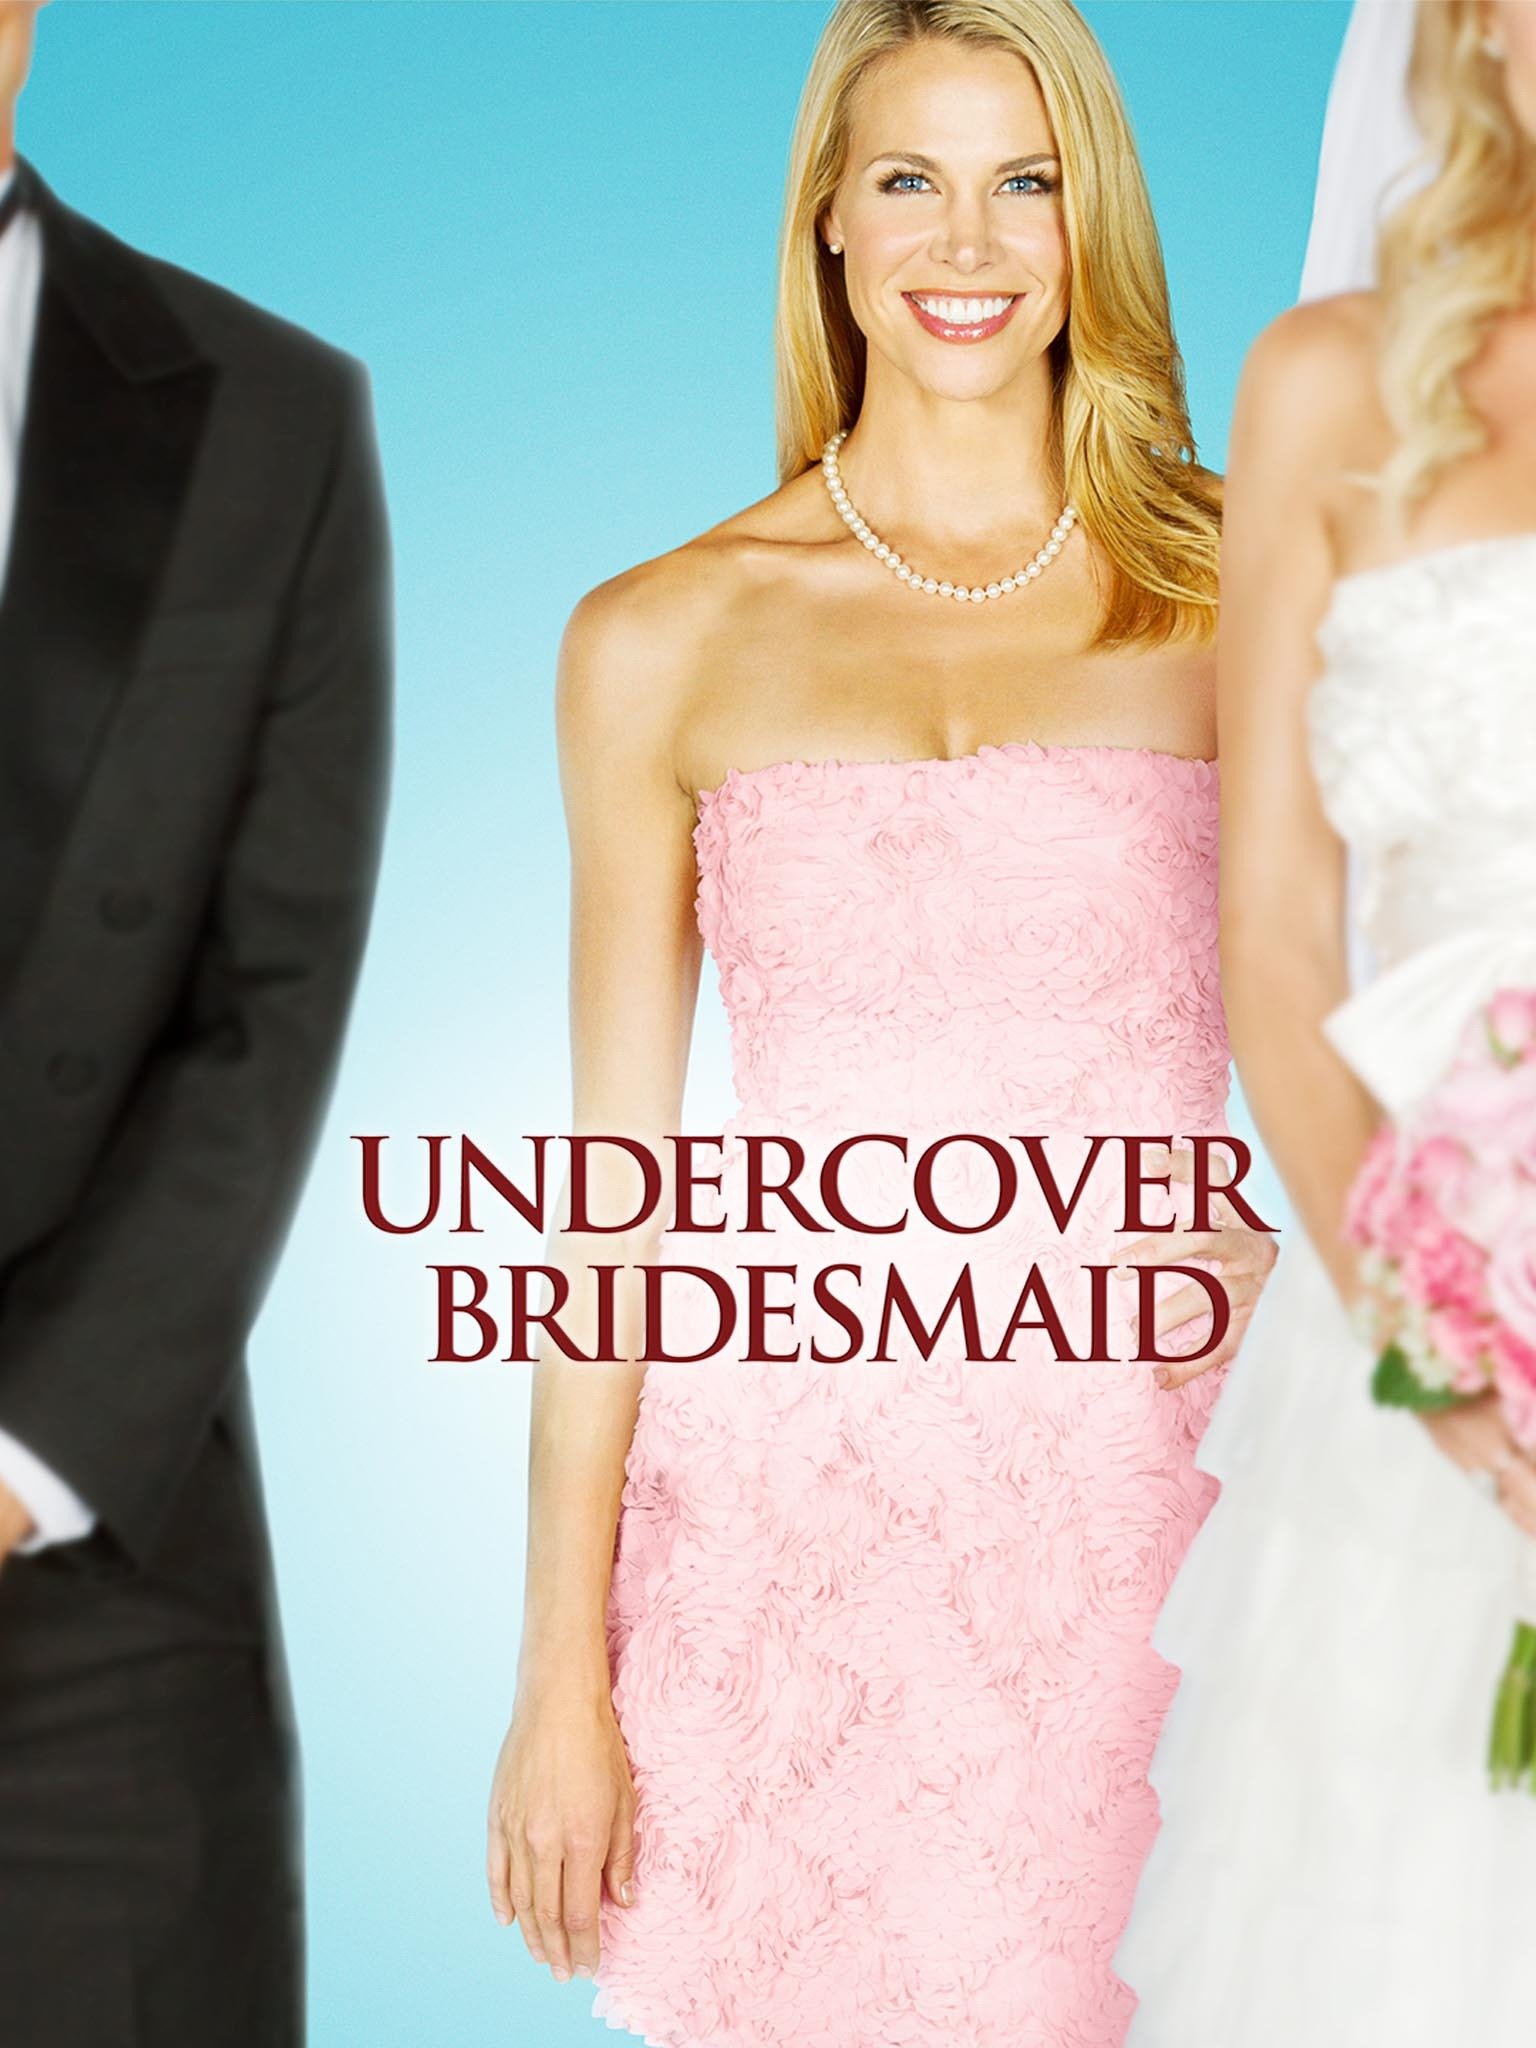 undercover bridesmaid putlockers